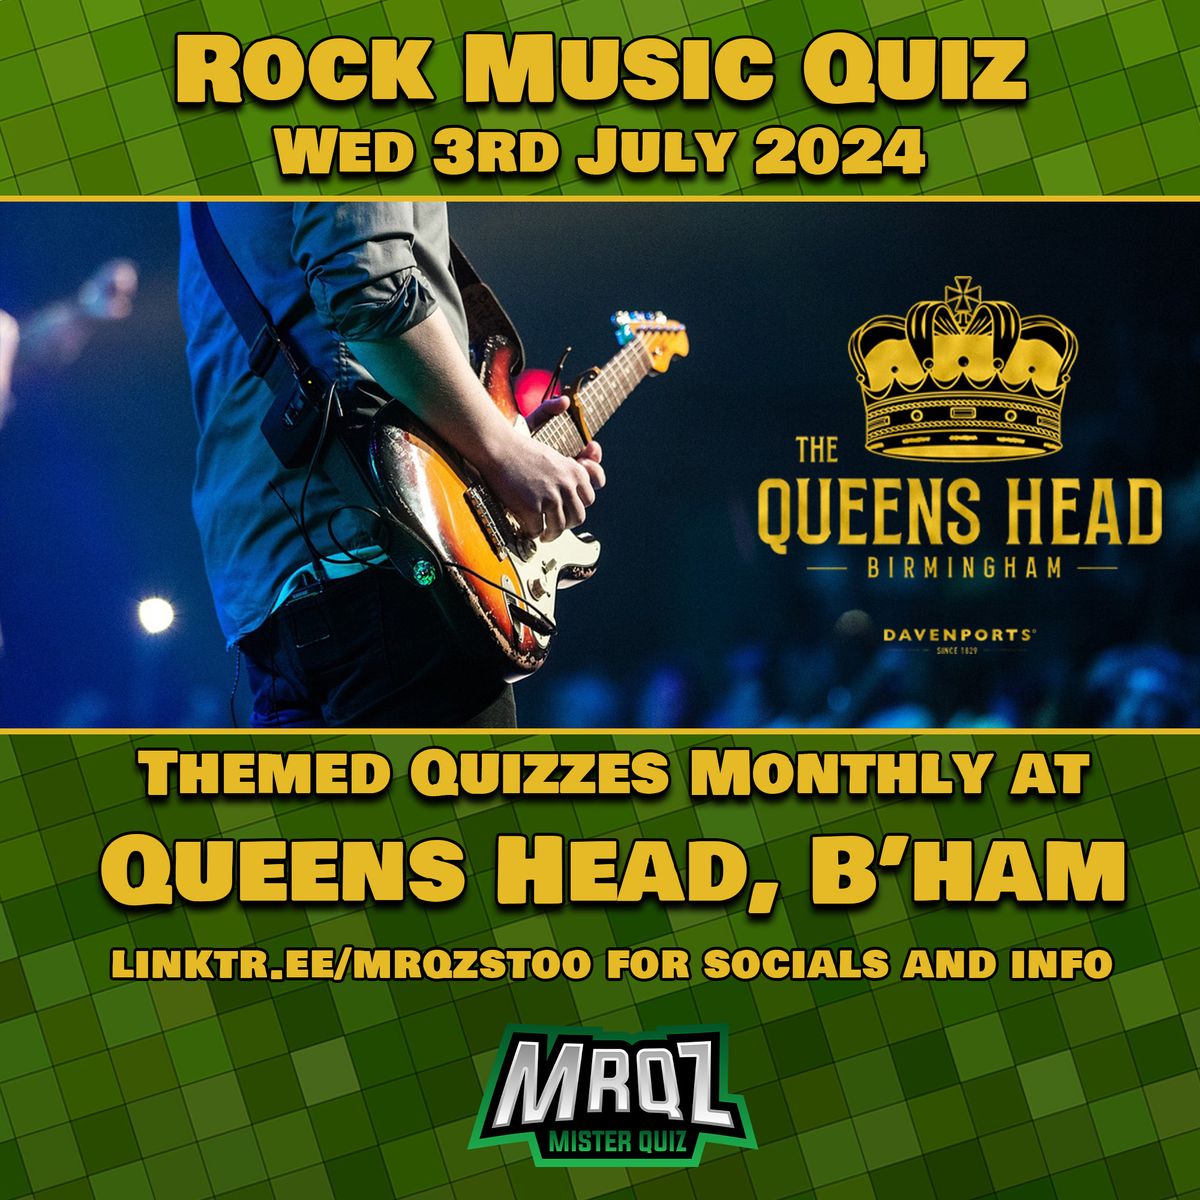 Rock Music Quiz @ The Queens Head